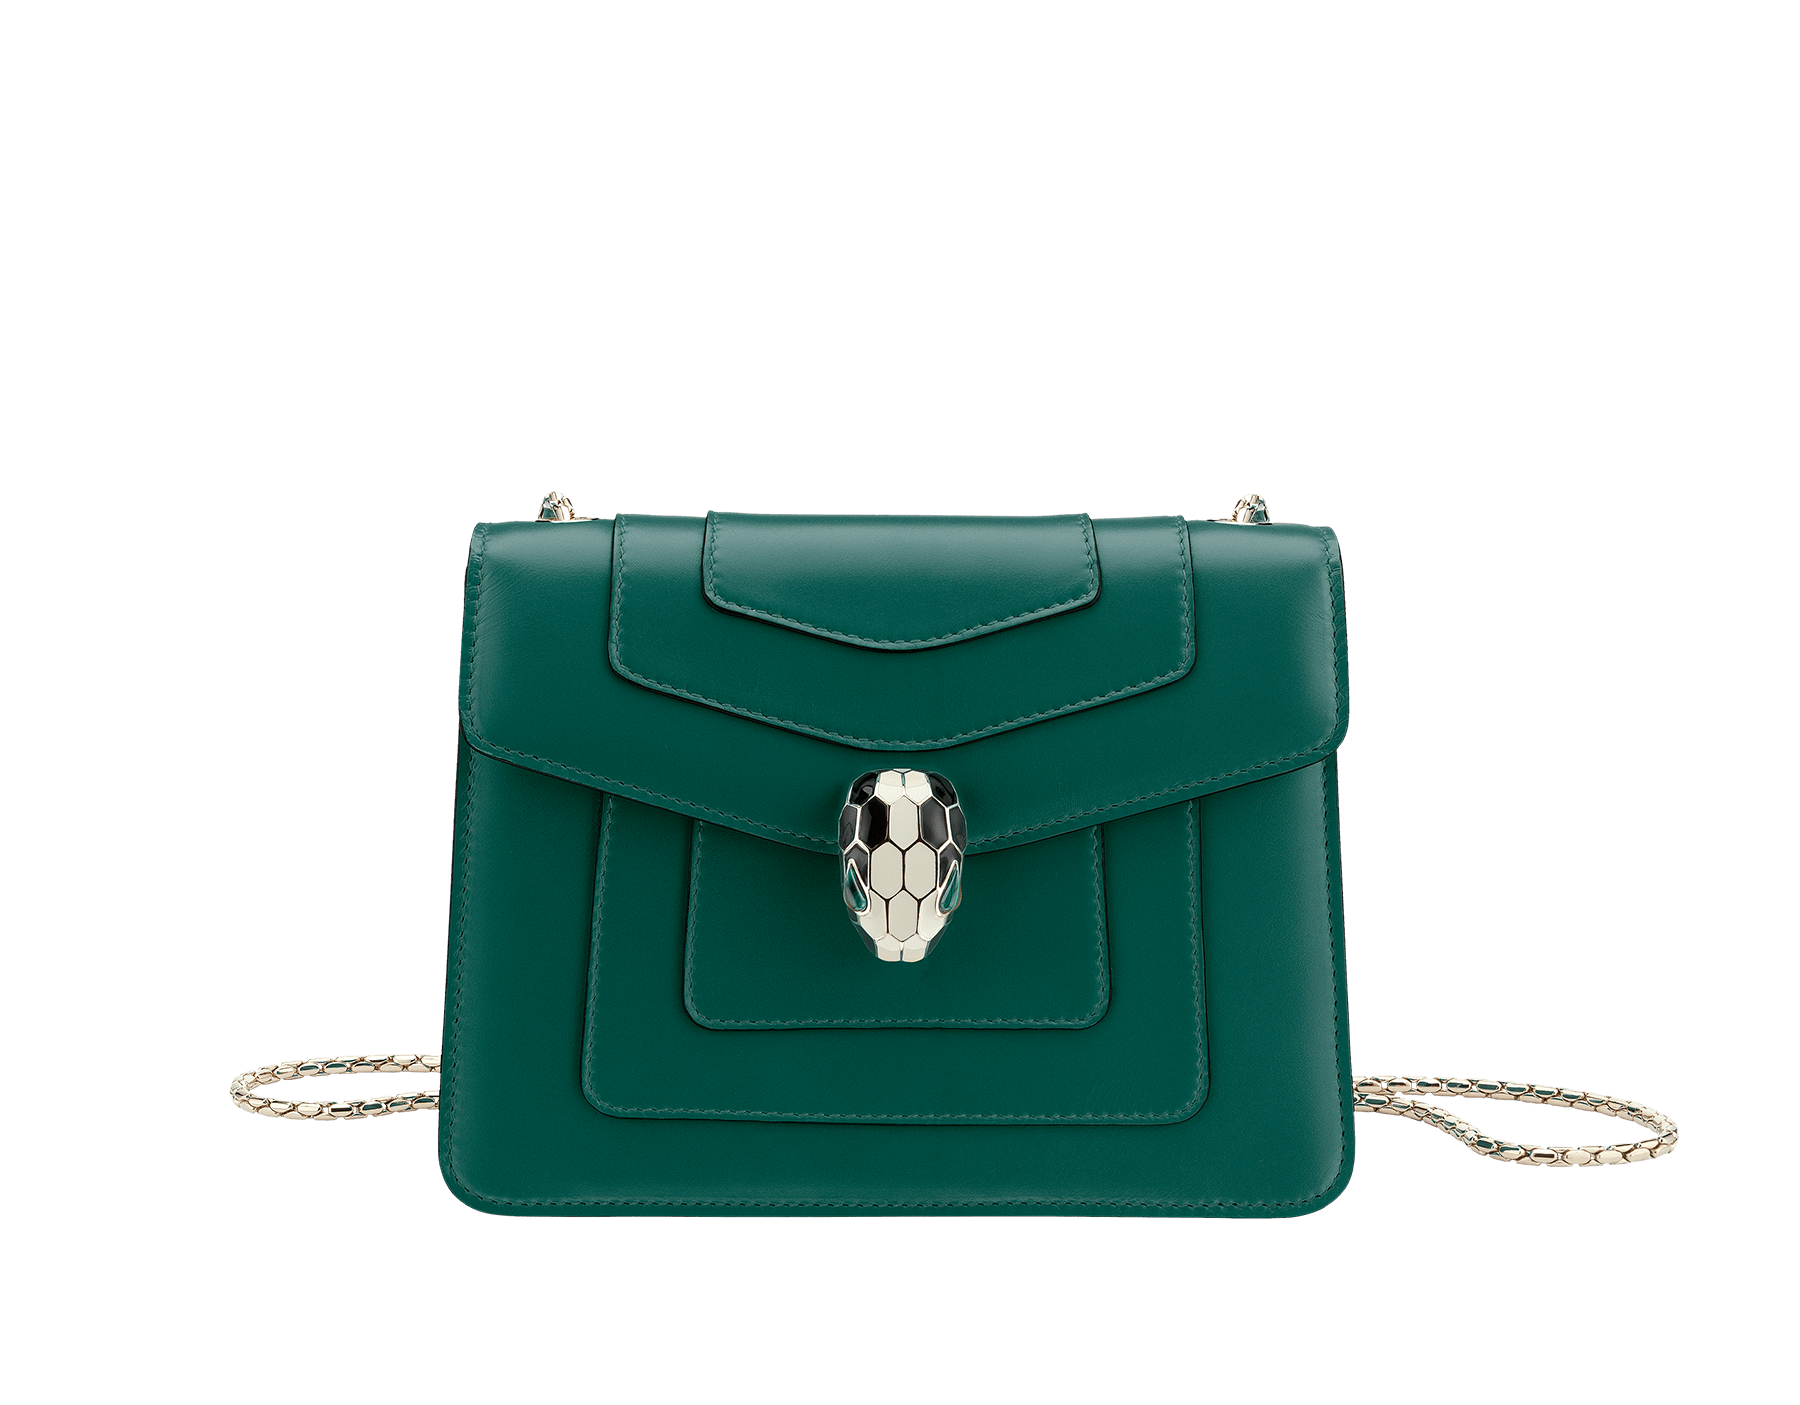 bvlgari handbags online store